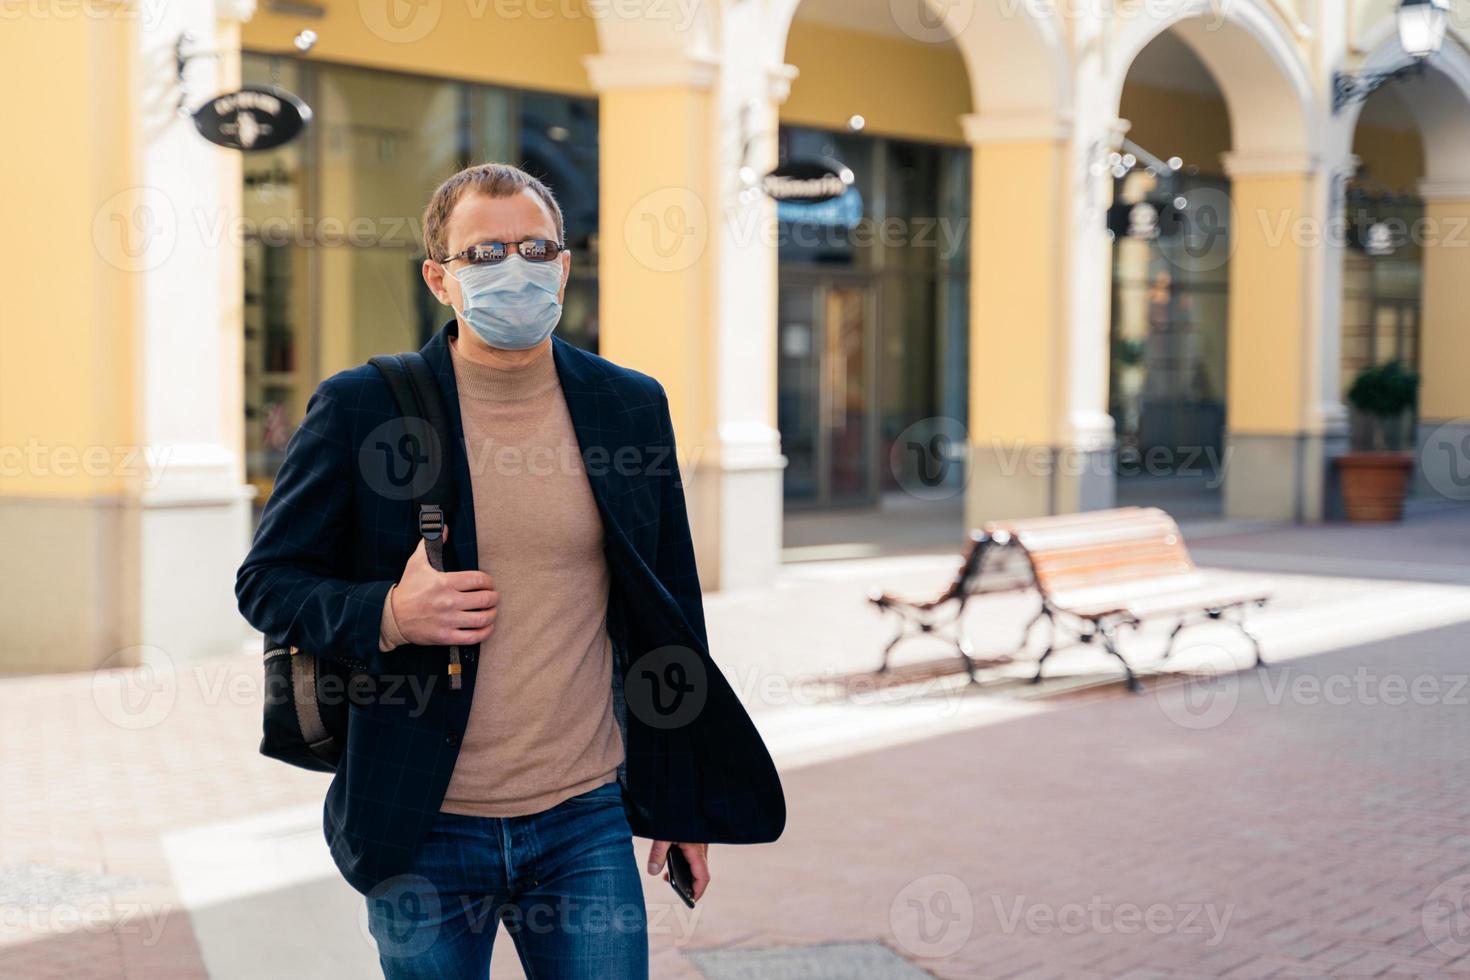 homem europeu usa máscara facial protetora enquanto coronavírus e pandemia, carrega mochila, posa ao ar livre na estação de ônibus, viaja durante a quarentena. vírus covid-19, surto epidêmico, local público foto